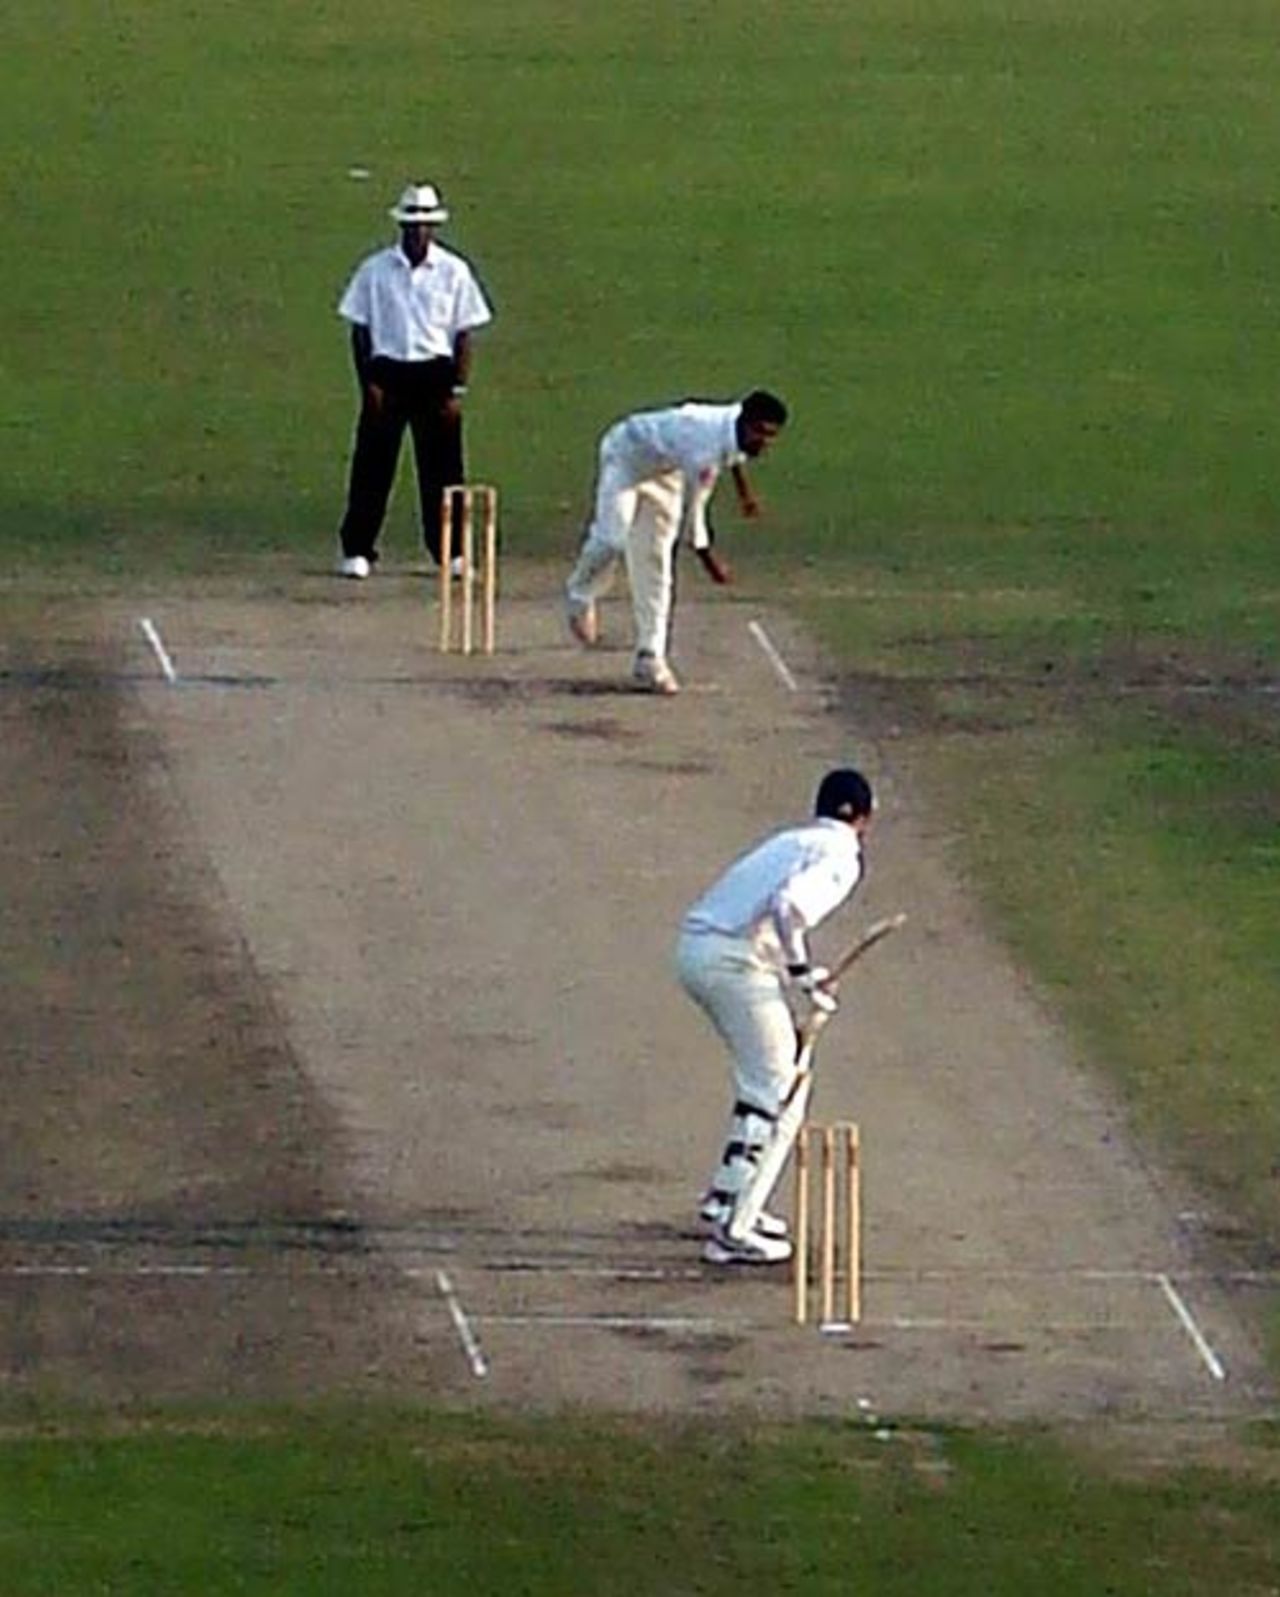 Bangladesh A paceman Dollar Mahmud bowls to England A opener Will Jefferson, England A v Bangladesh A, Sher-e-Bangla National Cricket Stadium, 1st day of four, February 22, 2007